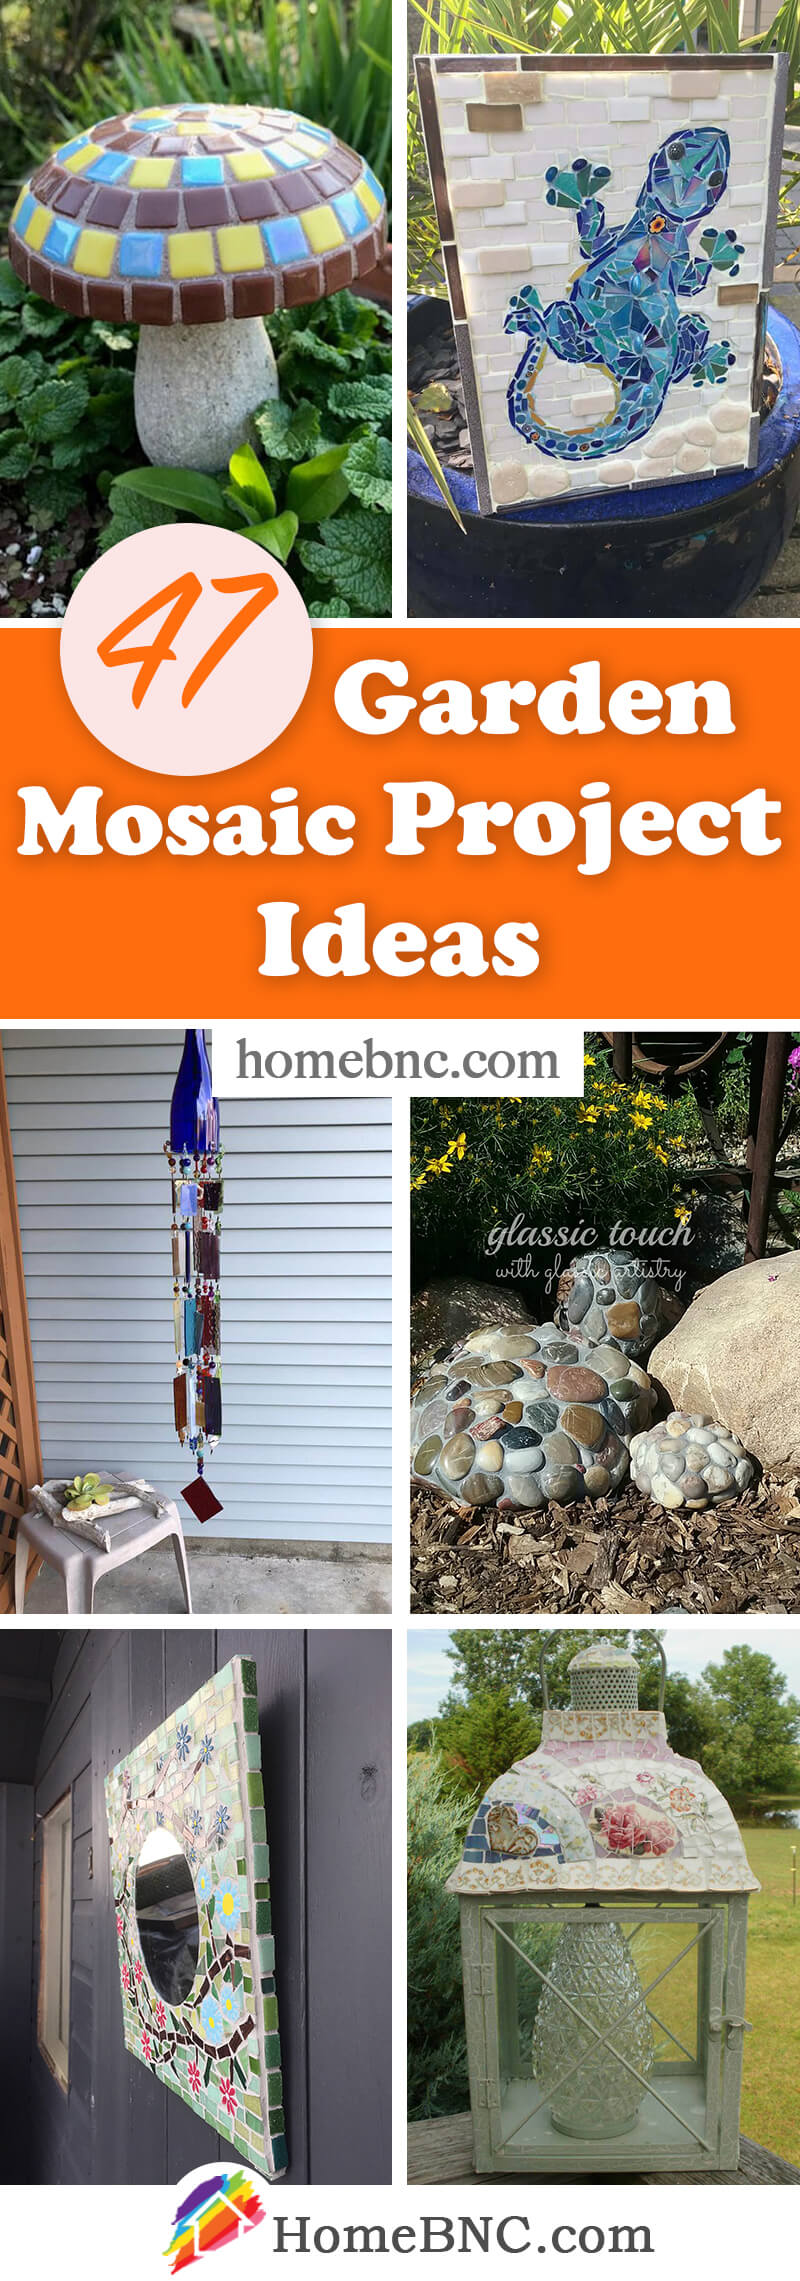 DIY Garden Mosaic Ideas